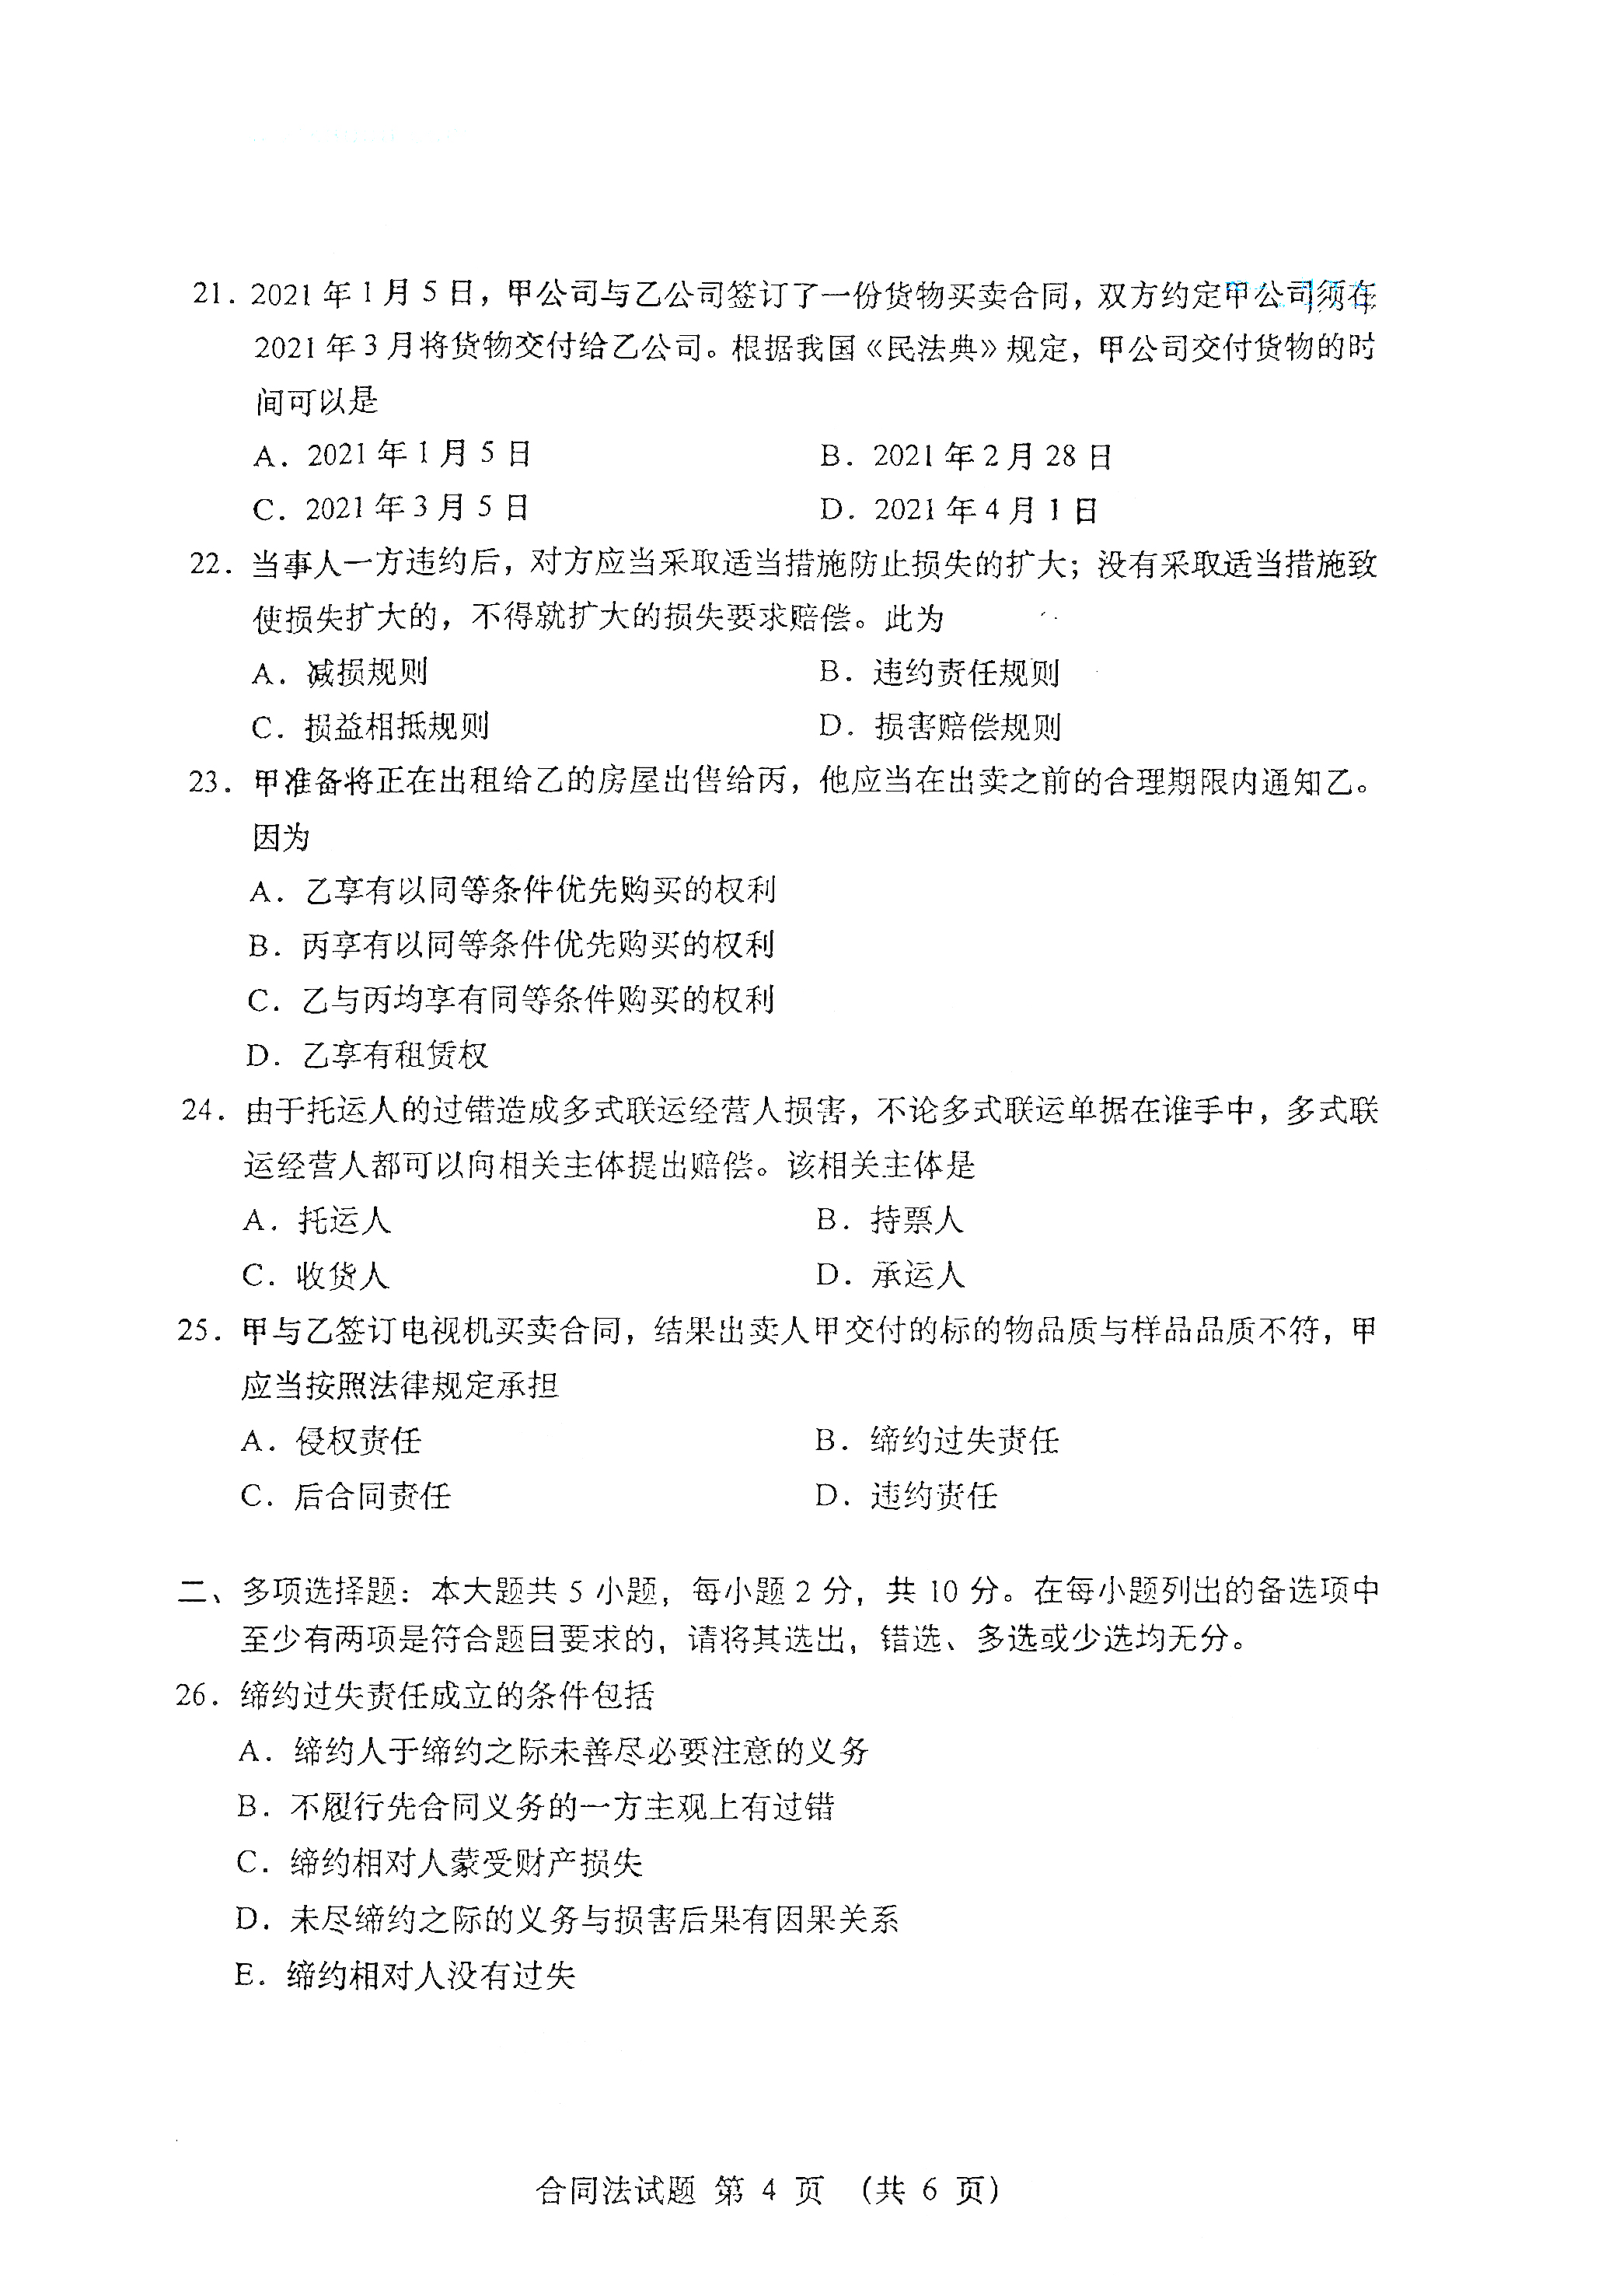 贵州自考2021年4月自考00230合同法真题试卷